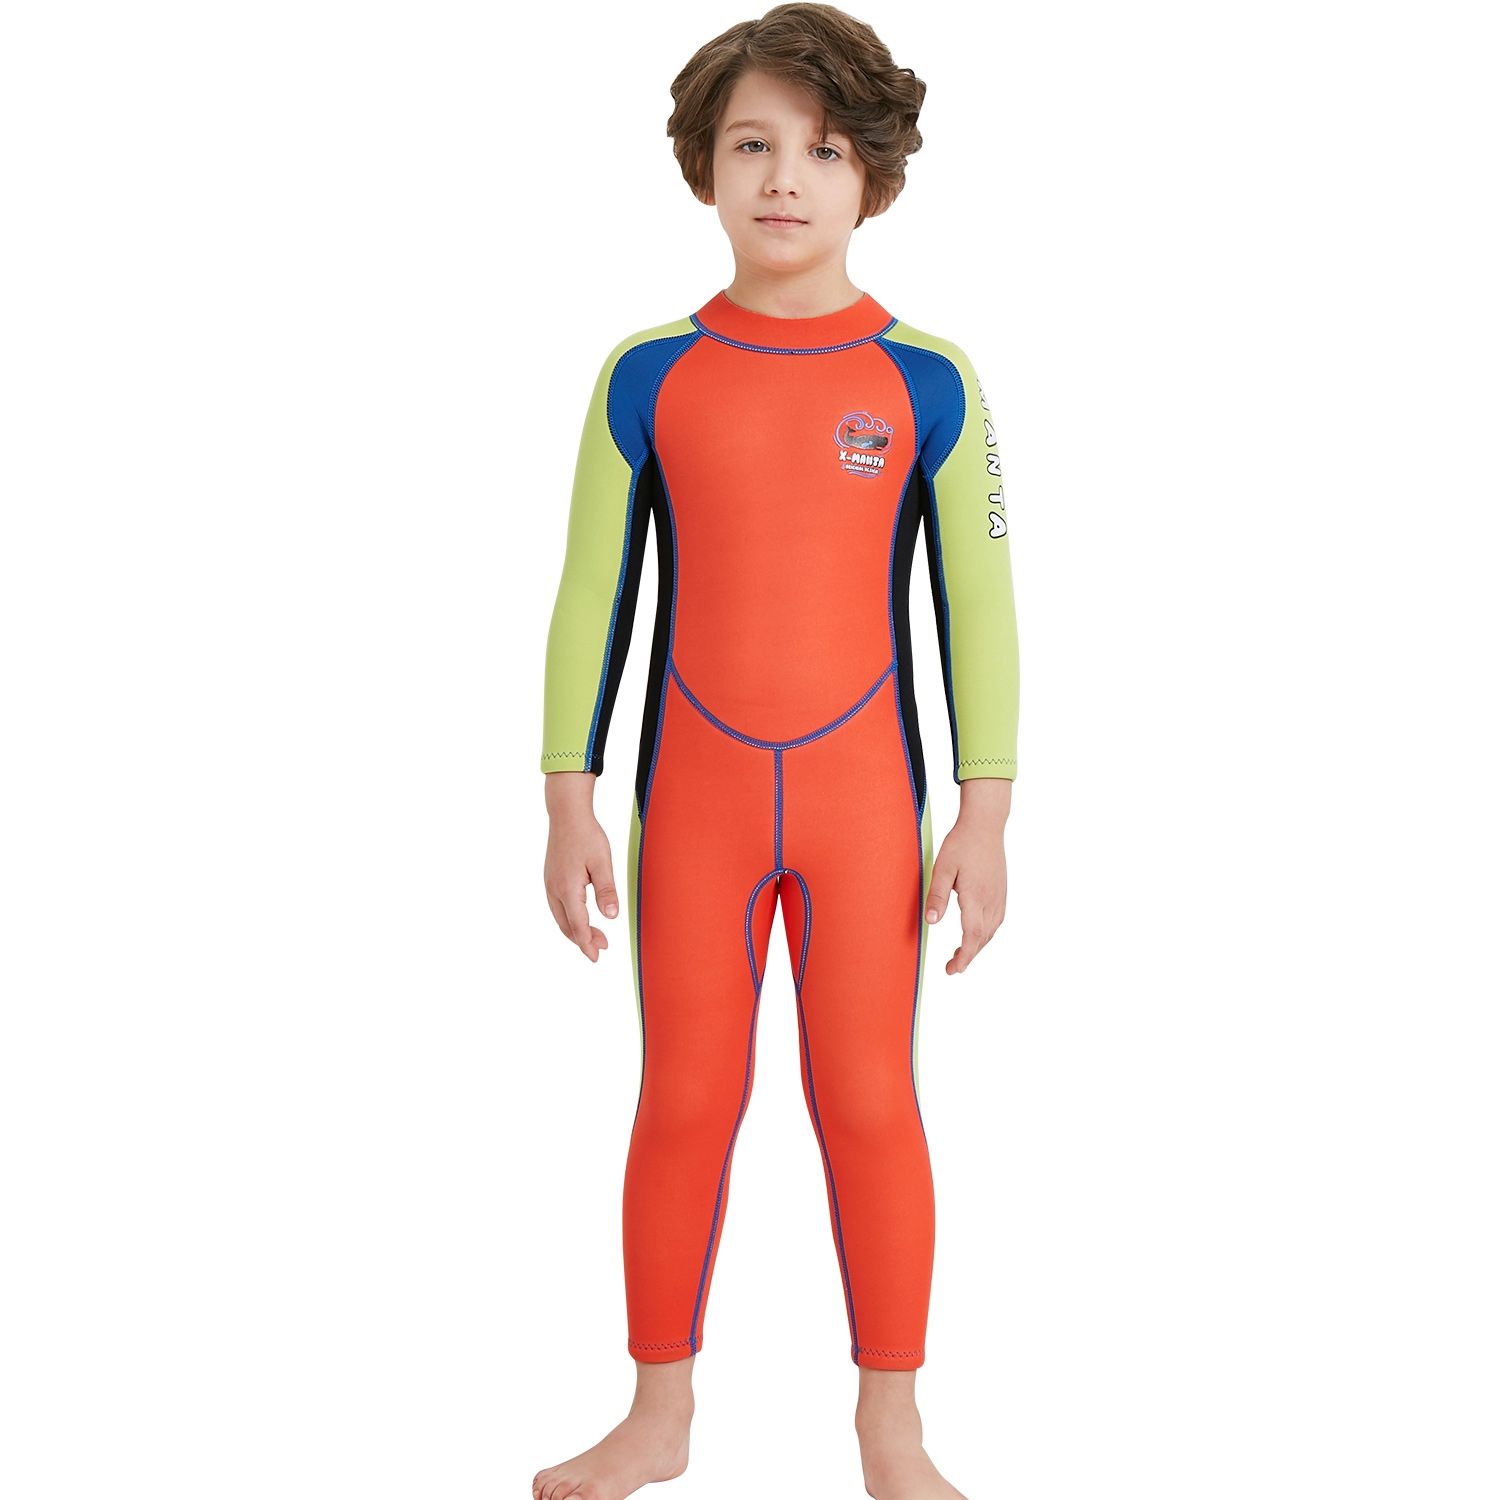 x-manta style boy sailing suit children  wetsuit